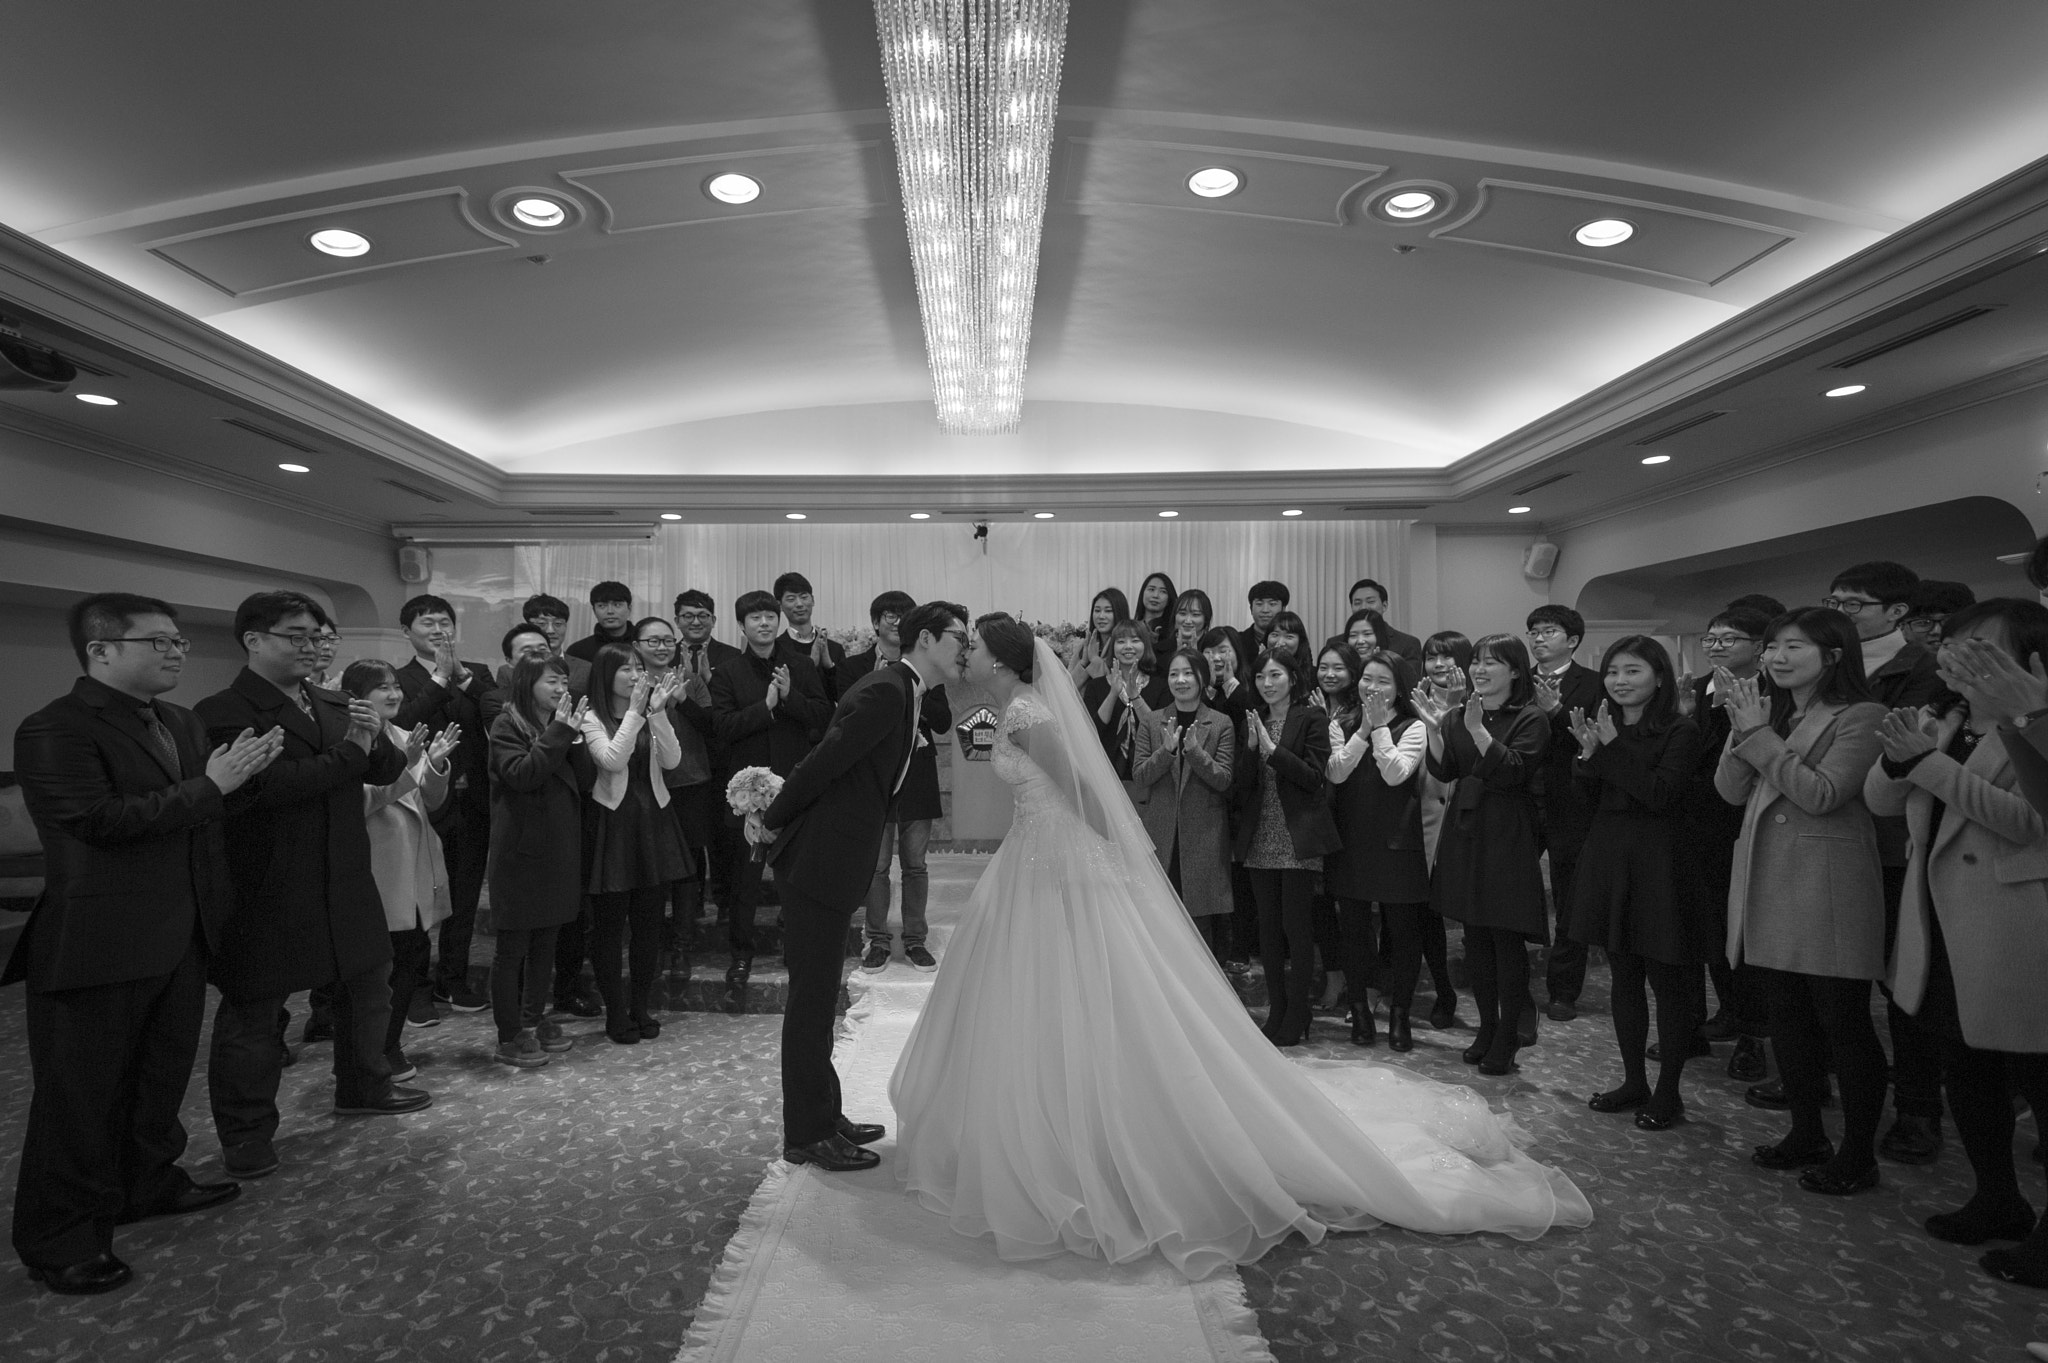 Nikon D3S + Nikon AF-S Nikkor 14-24mm F2.8G ED sample photo. Seoul central district court wedding hall 02 photography